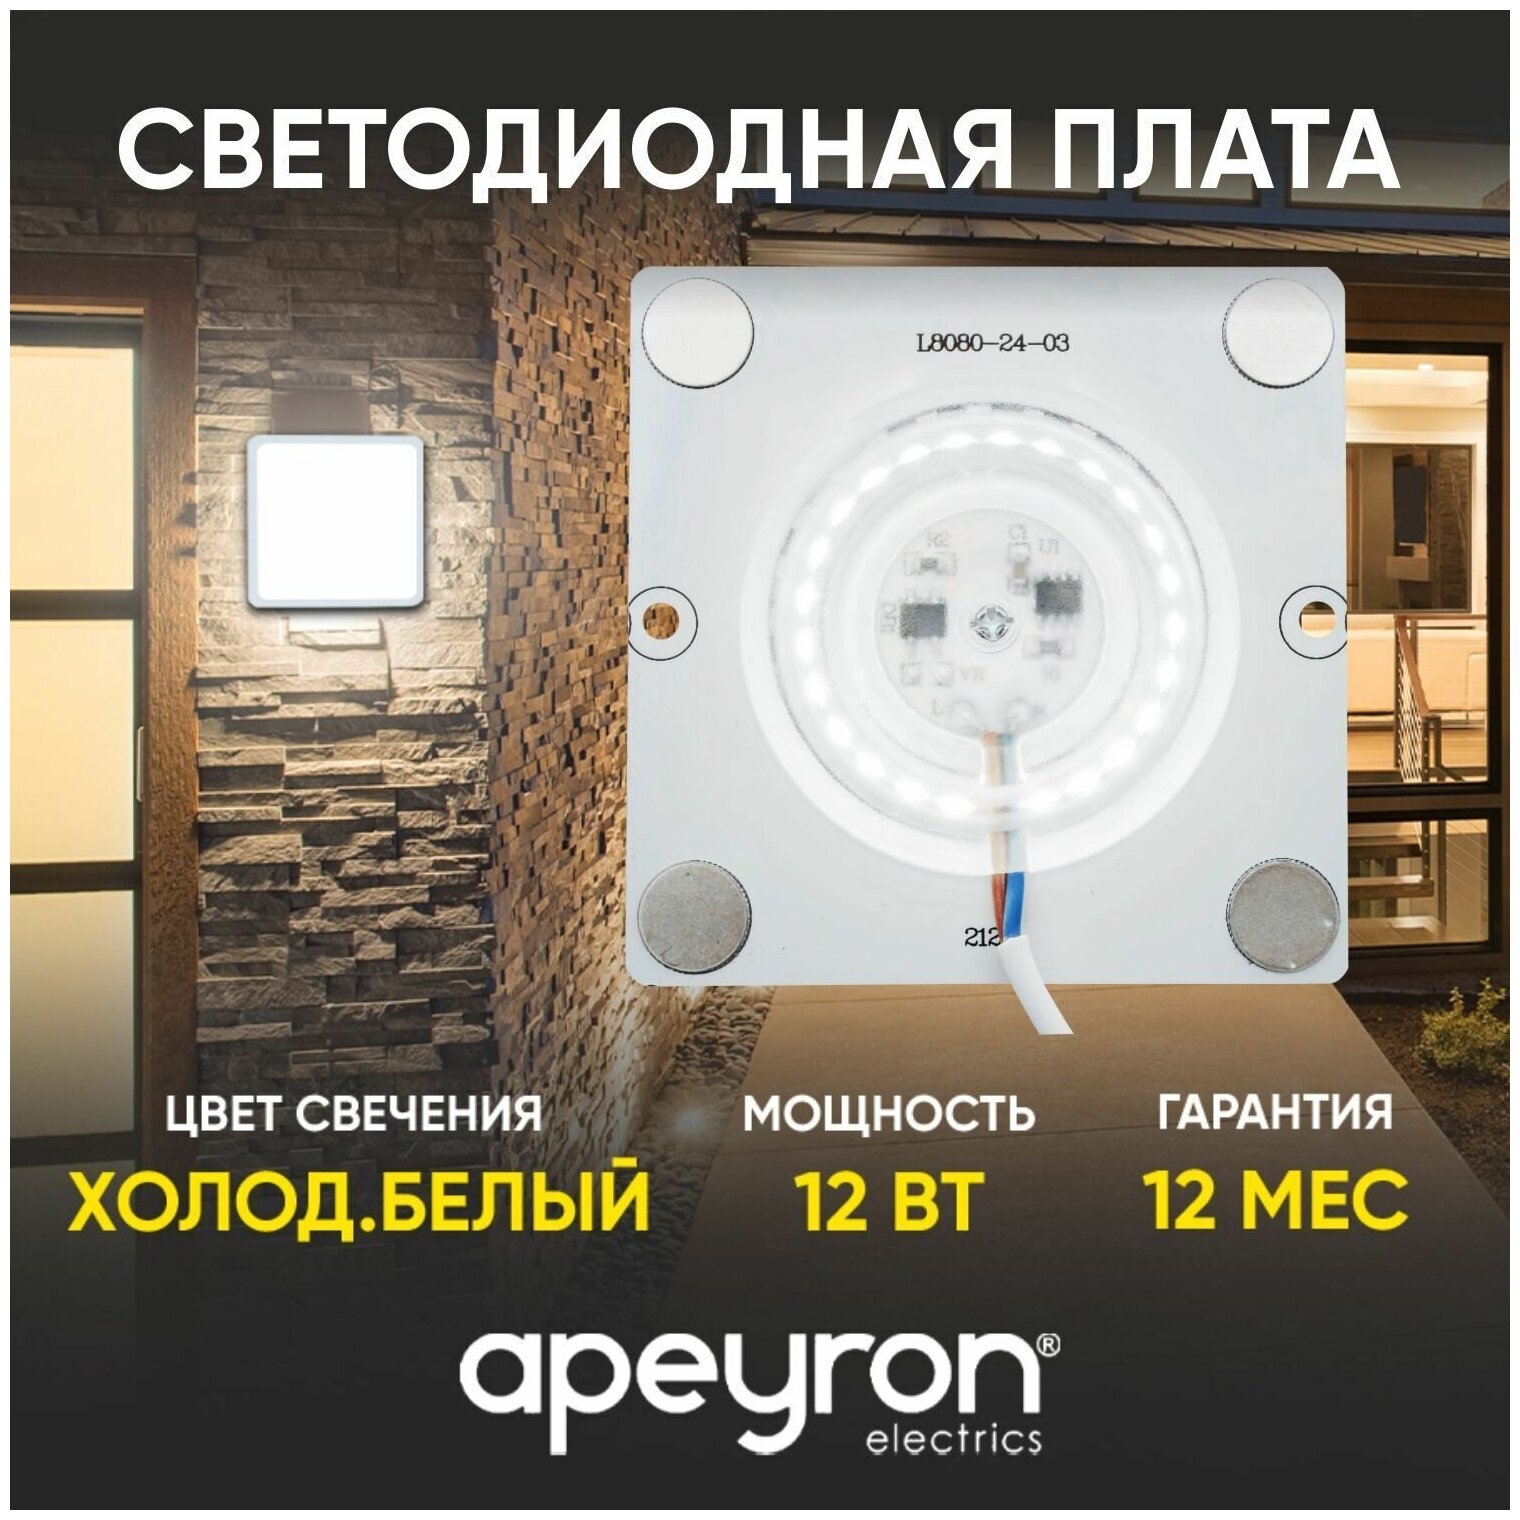 Плата светодиодная Apeyron Electrics 12 Вт SMD2835 6500 К 960 Лм 220 В PF>0.9